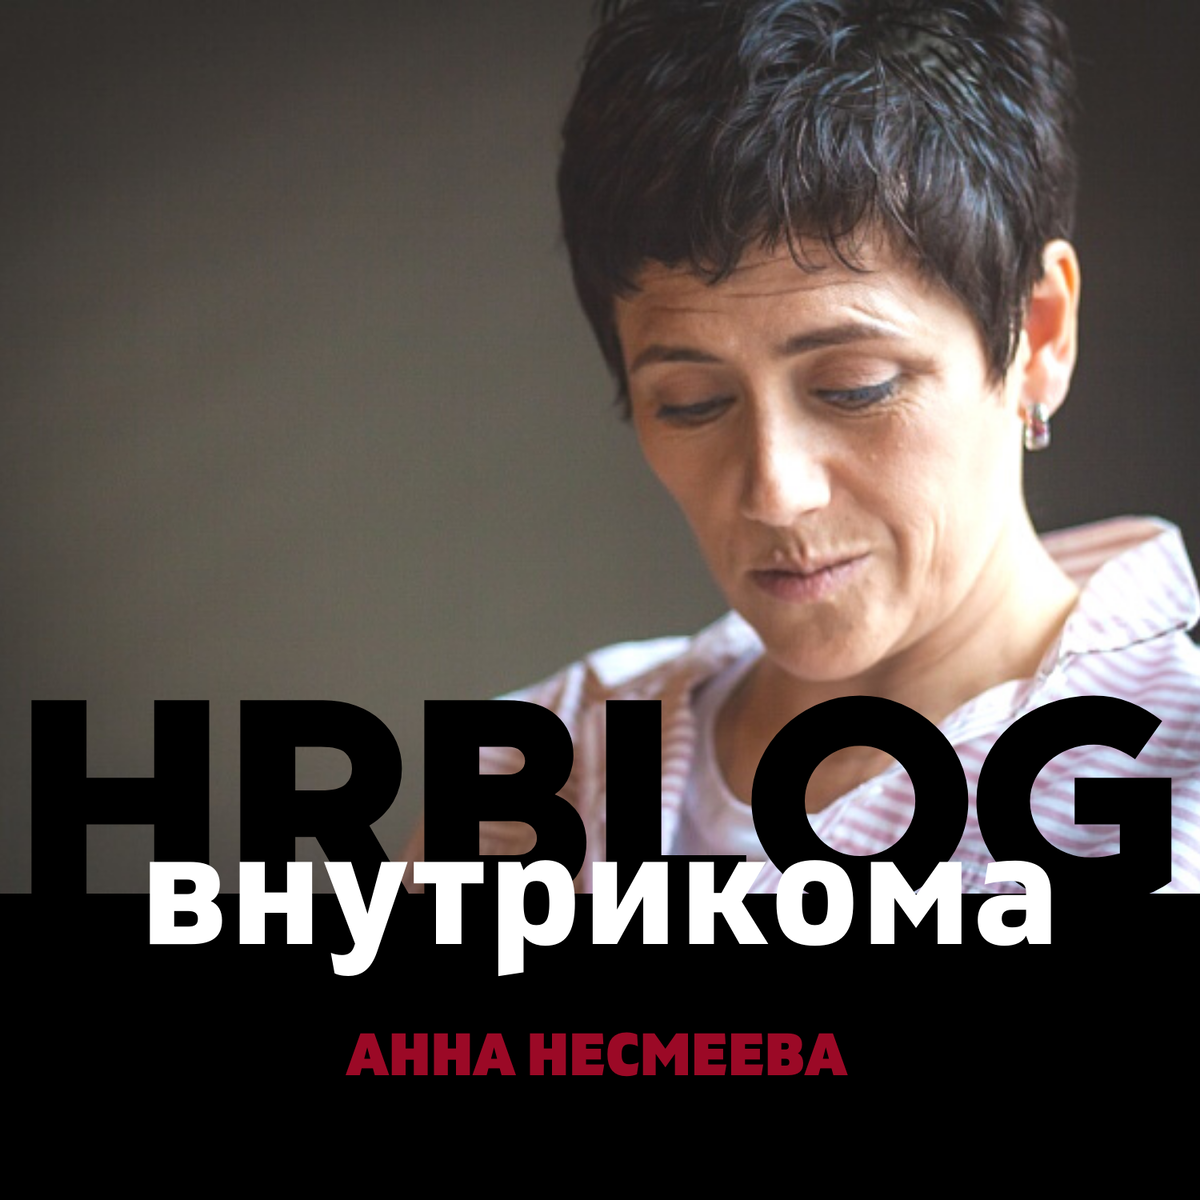 Слушаем свежий выпуск моего подкаста HR Blog Анны Несмеевой. Сегодня у нас пойдет речь о СТРАТЕГИИ. Как, у вас еще не готова стратегия?